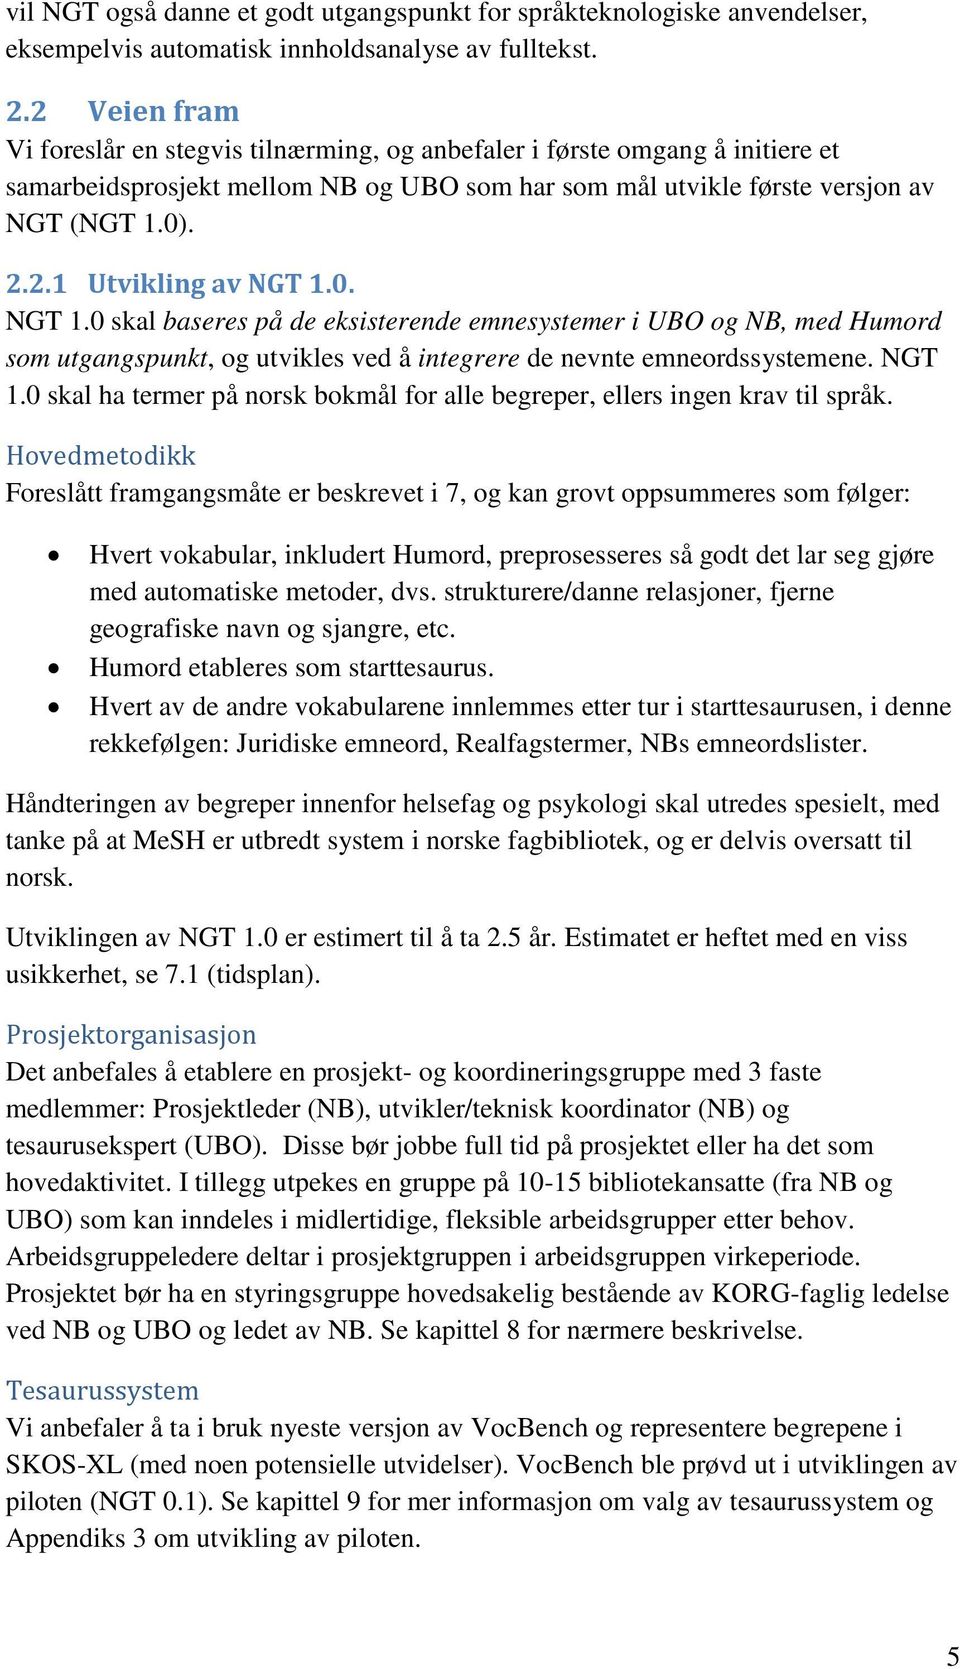 0. NGT 1.0 skal baseres på de eksisterende emnesystemer i UBO og NB, med Humord som utgangspunkt, og utvikles ved å integrere de nevnte emneordssystemene. NGT 1.0 skal ha termer på norsk bokmål for alle begreper, ellers ingen krav til språk.